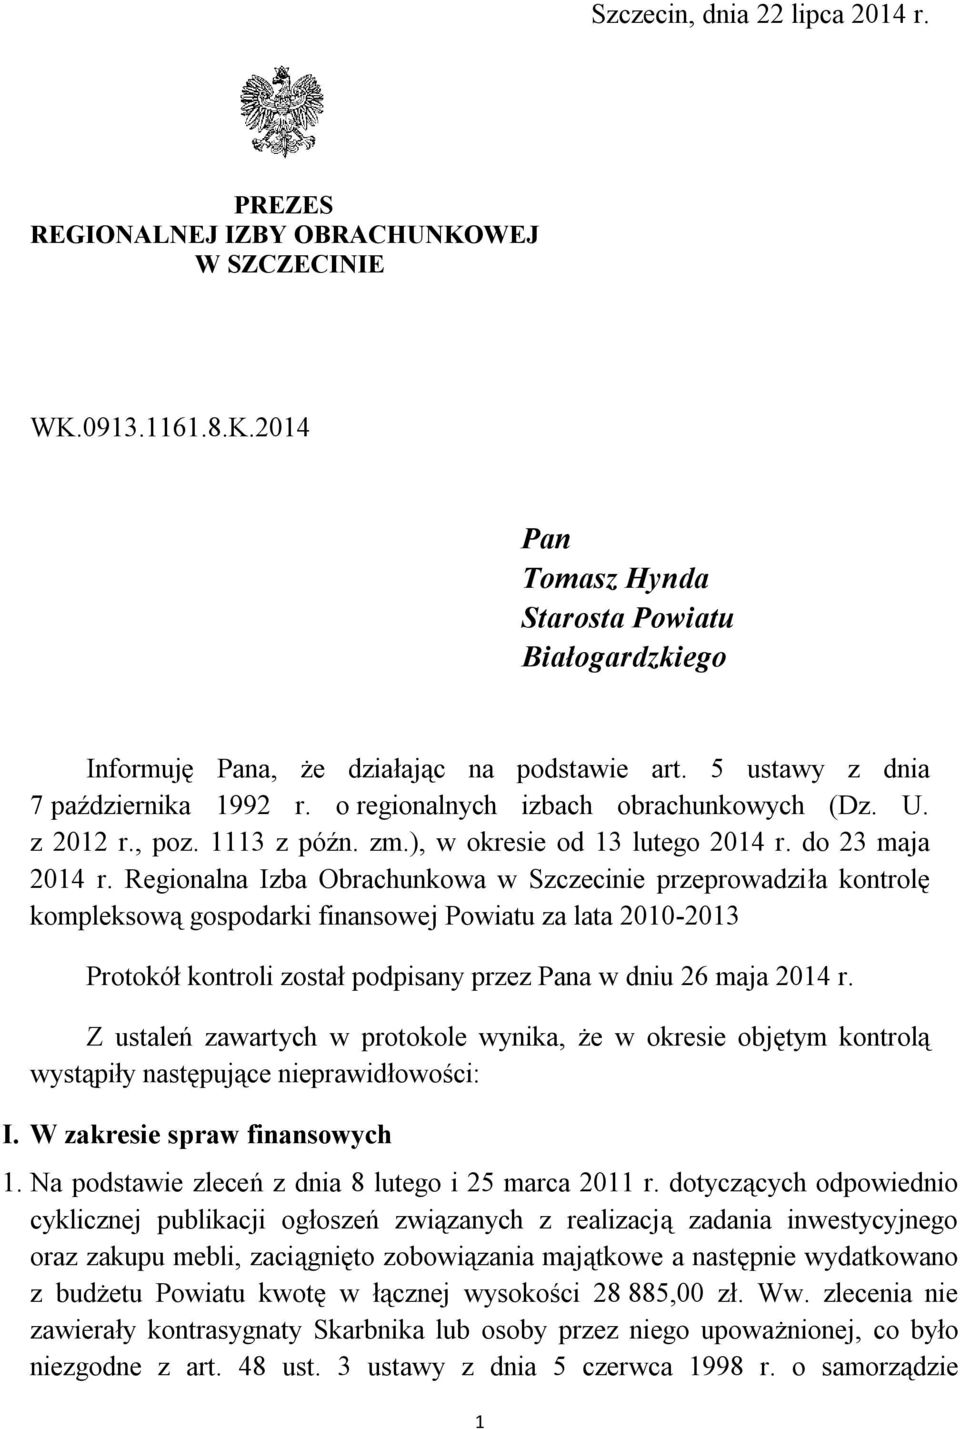 Regionalna Izba Obrachunkowa w Szczecinie przeprowadziła kontrolę kompleksową gospodarki finansowej Powiatu za lata 2010-2013 Protokół kontroli został podpisany przez Pana w dniu 26 maja 2014 r.